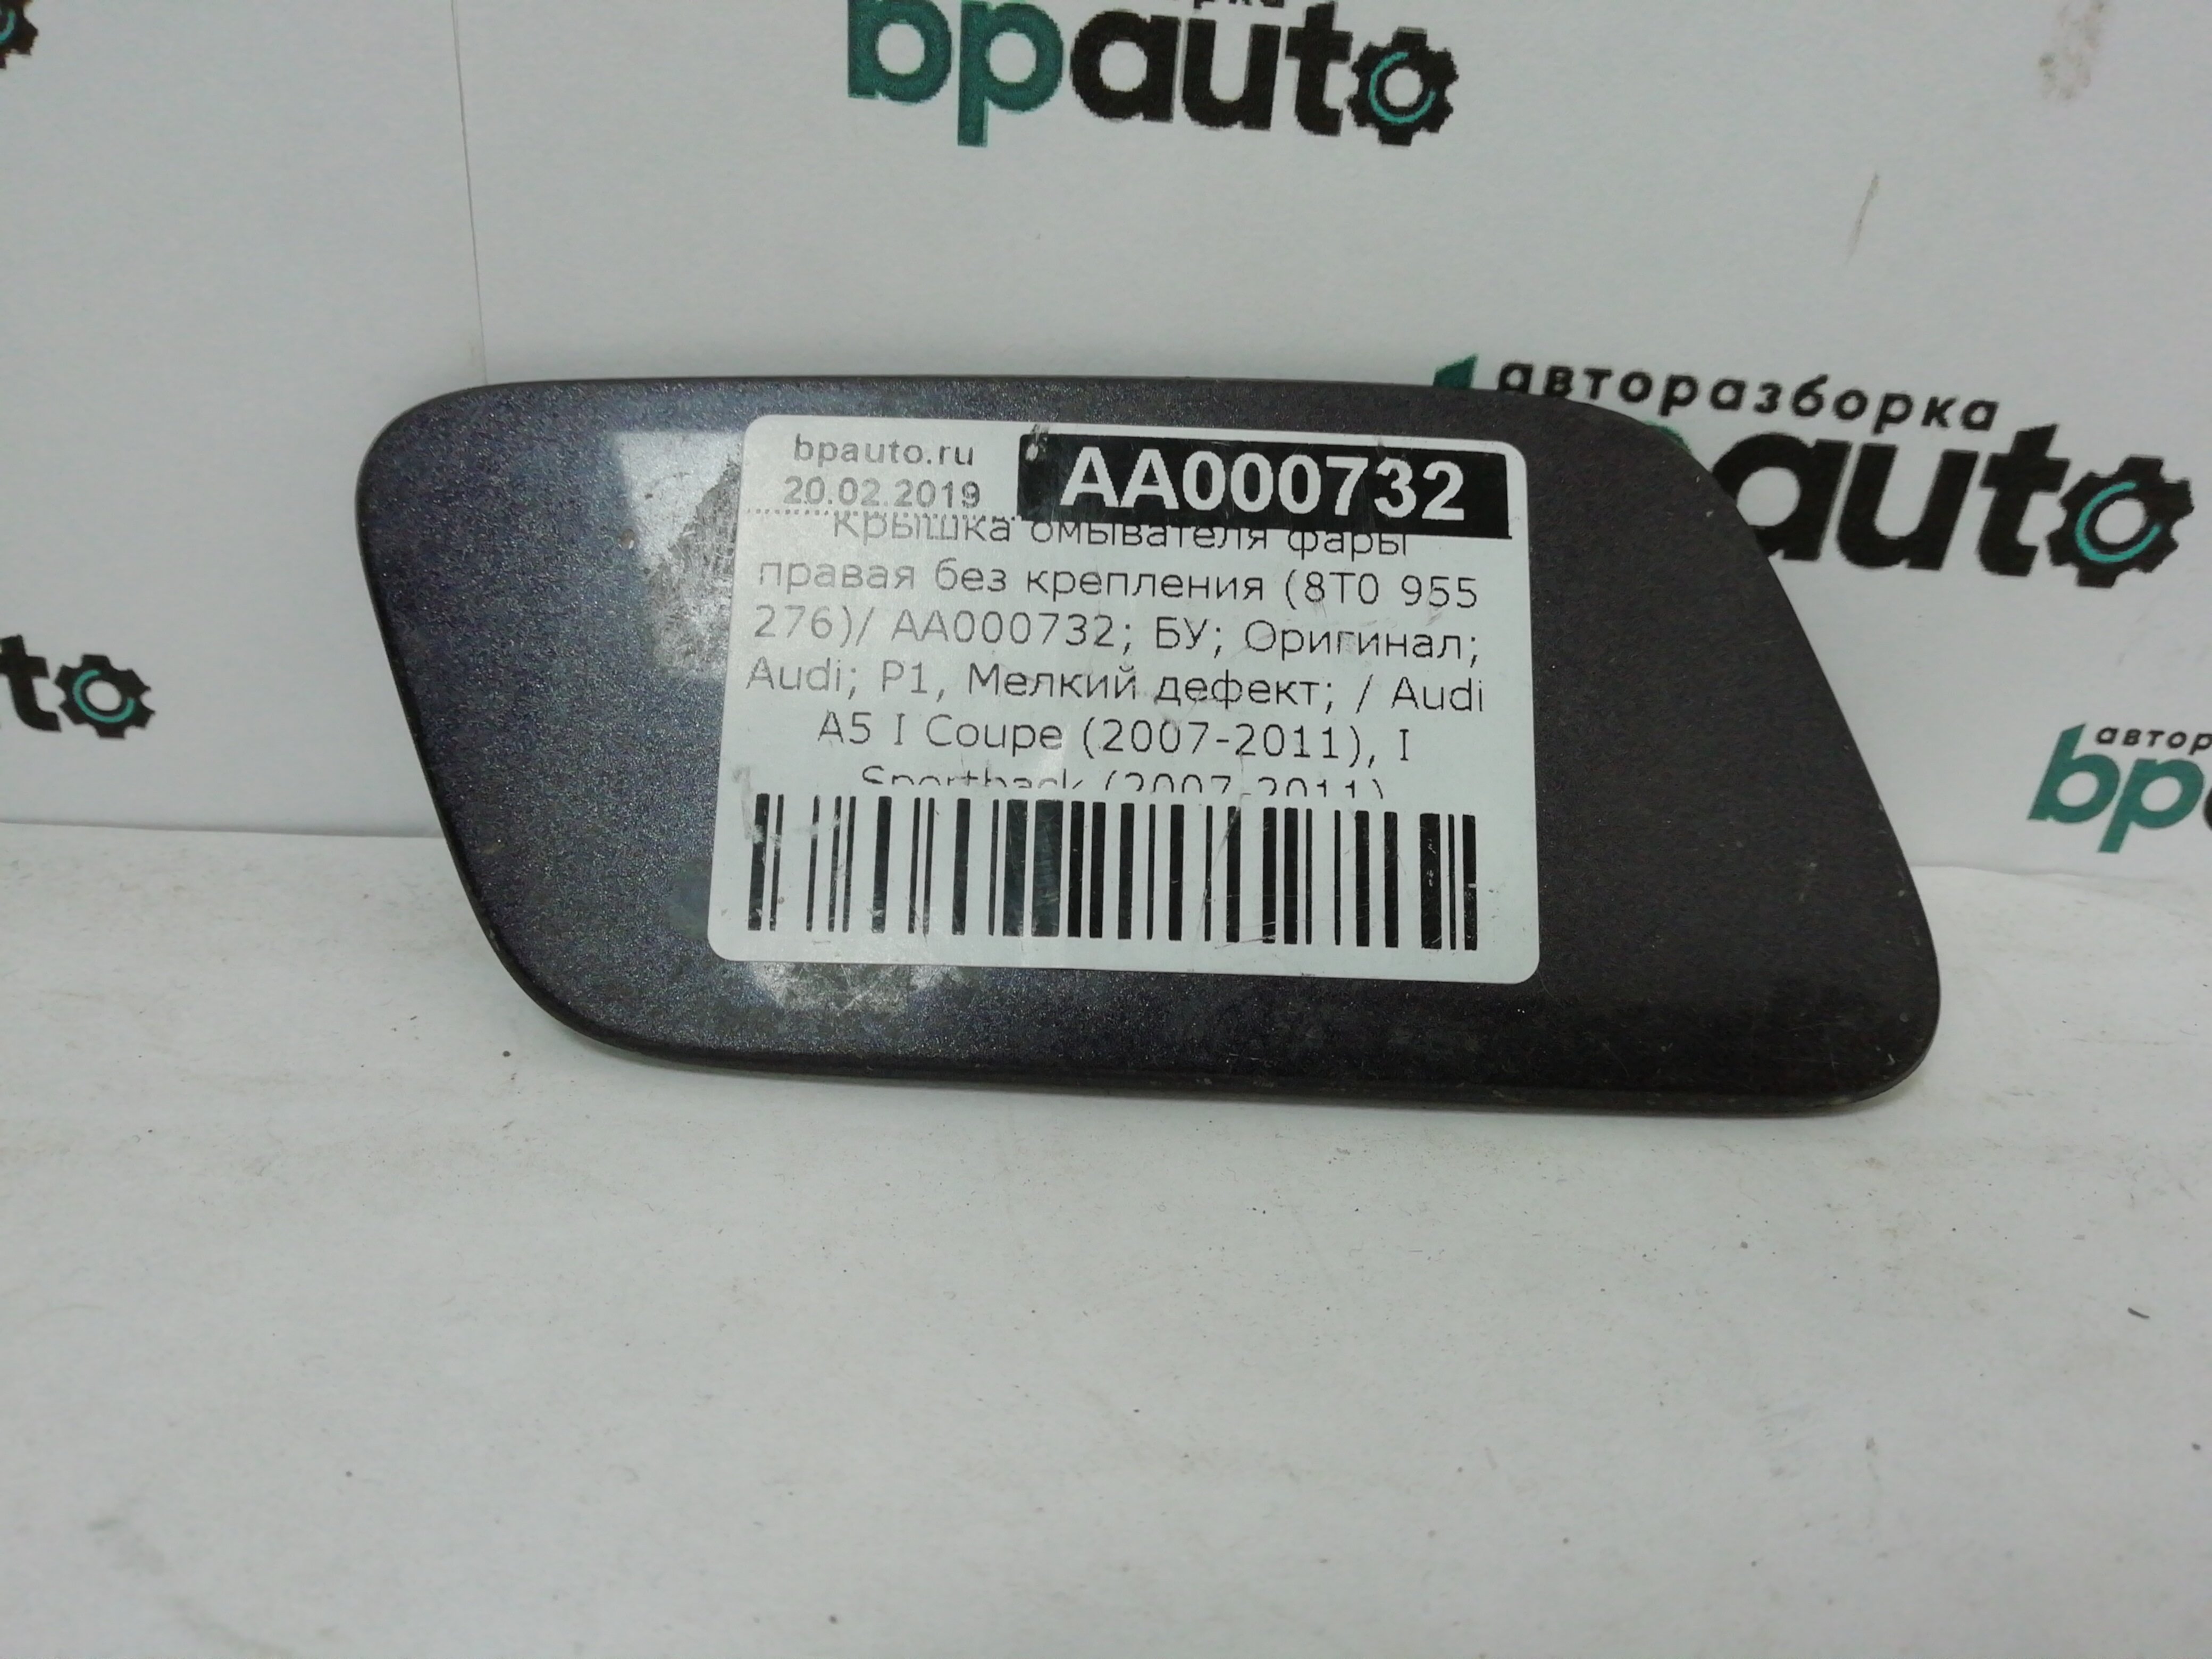 AA000732; Крышка омывателя фары правая (8T0 955 276) для Audi A5/БУ; Оригинал; Р1, Мелкий дефект; 